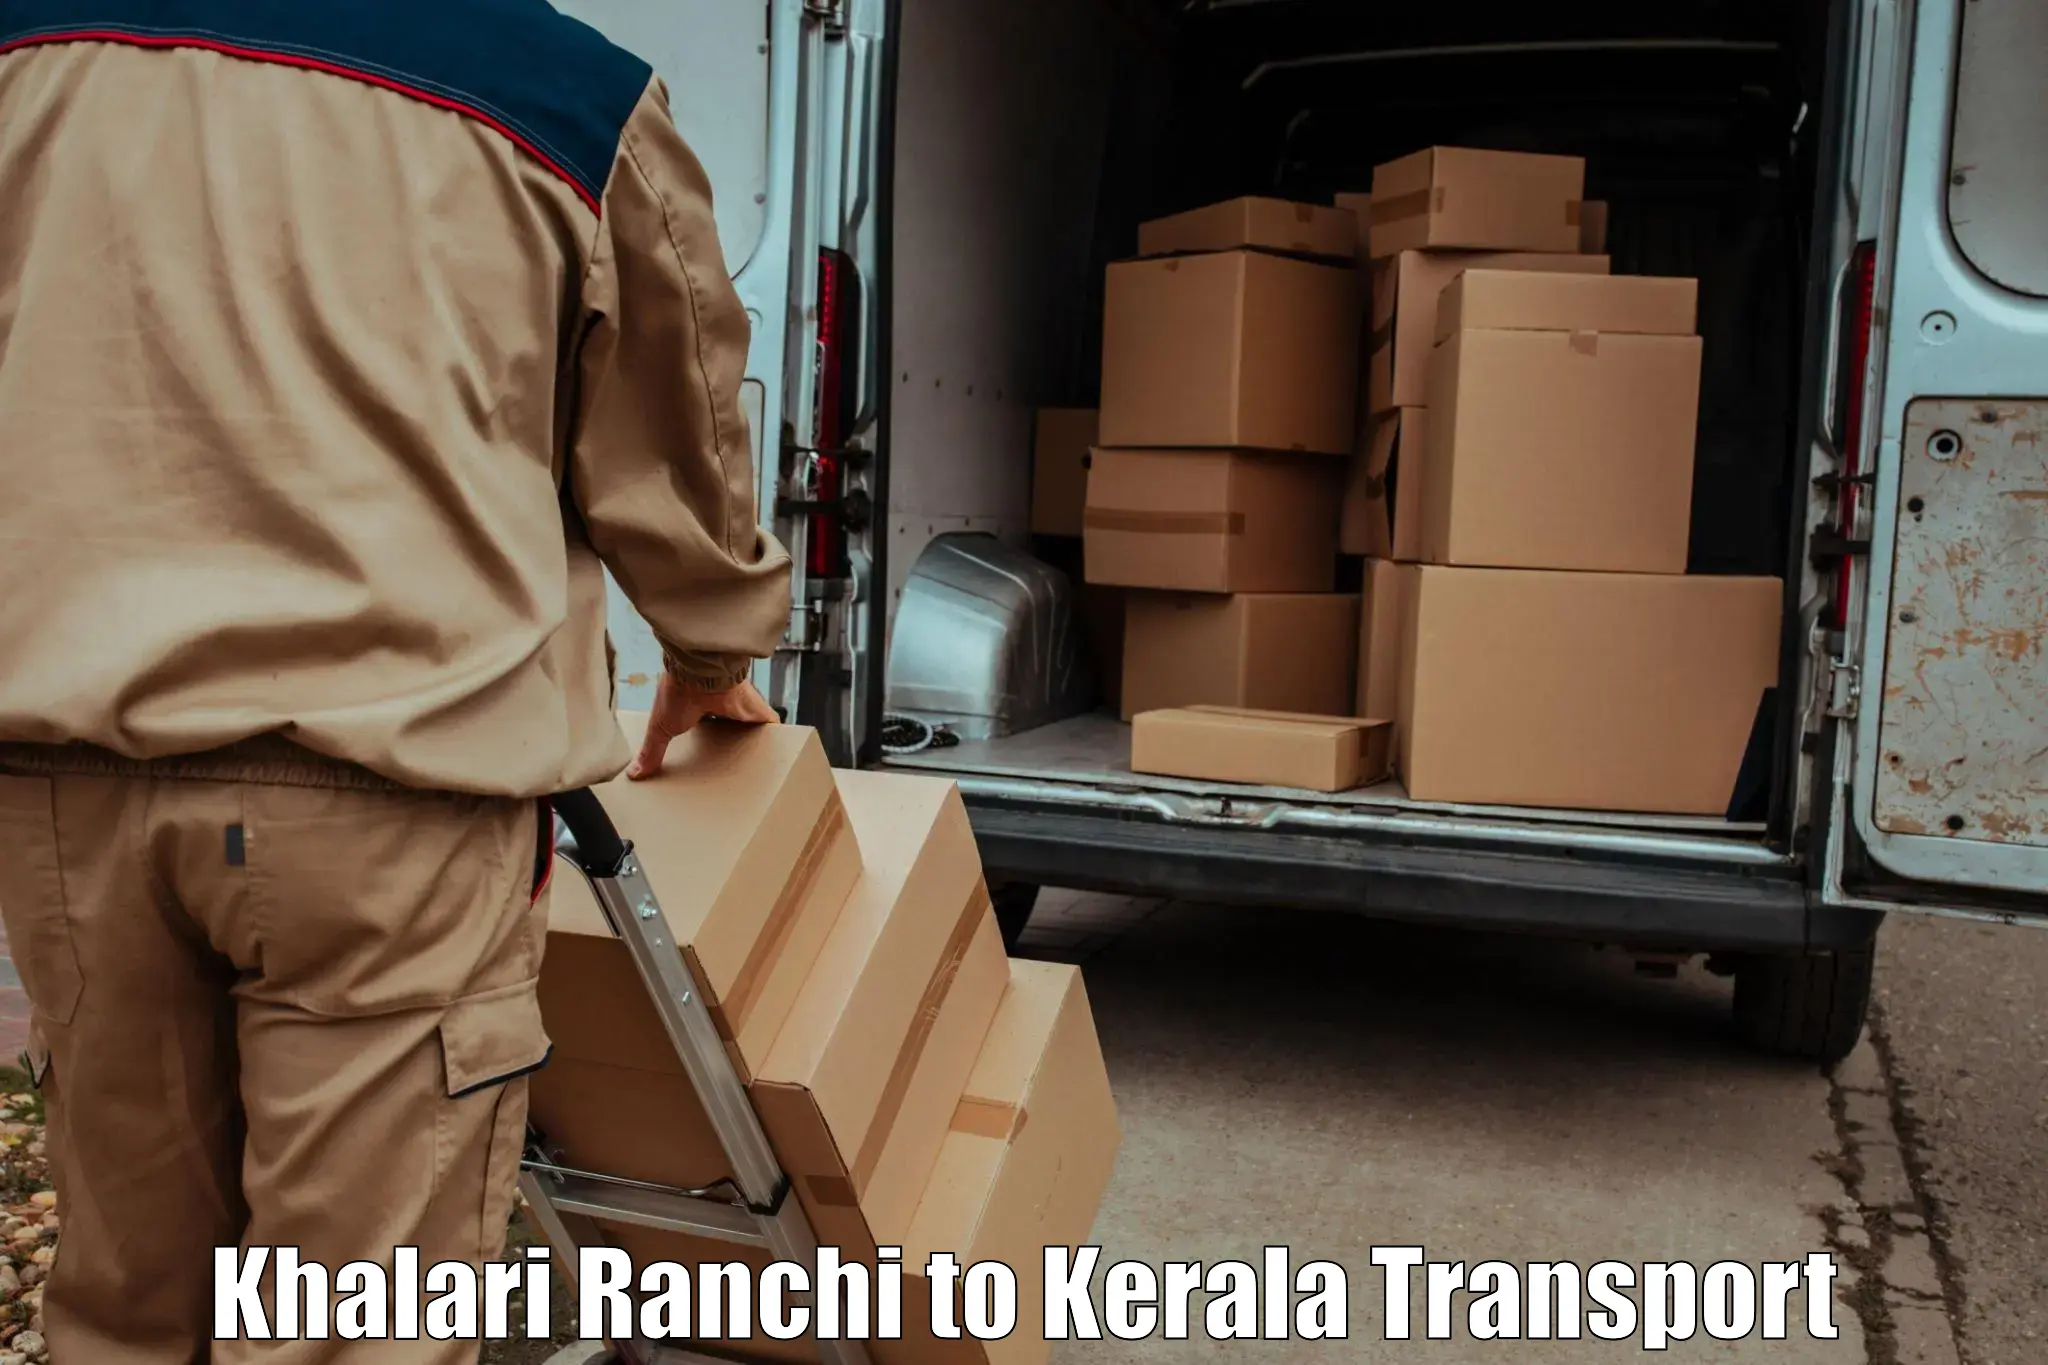 Interstate transport services Khalari Ranchi to Wayanad